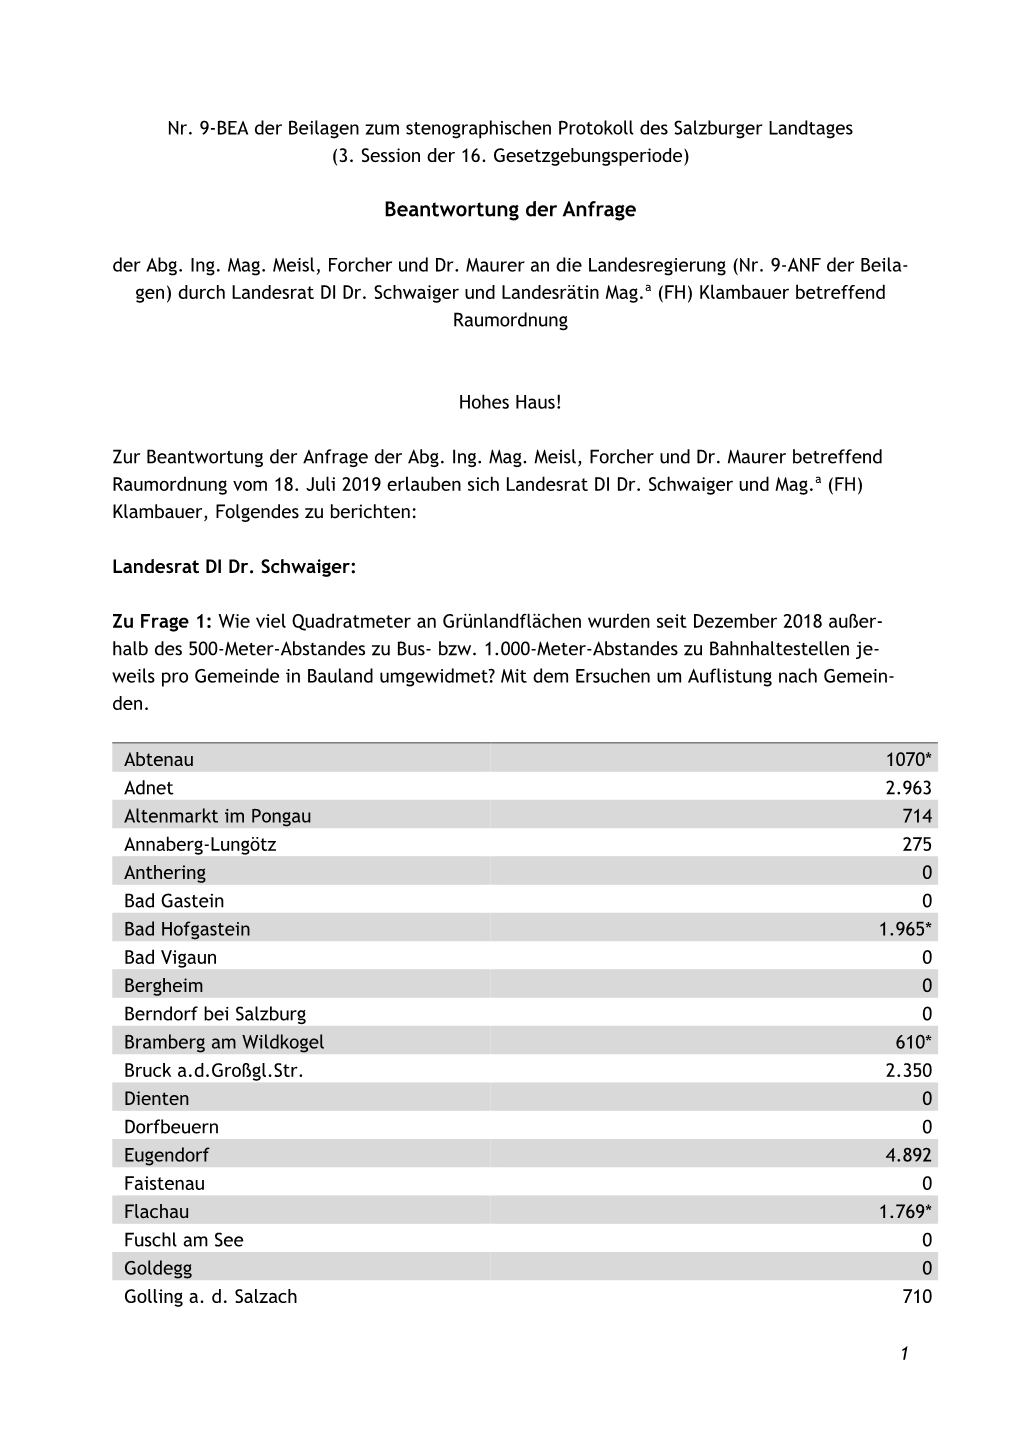 Nr. 9-BEA Der Beilagen Zum Stenographischen Protokoll Des Salzburger Landtages (3